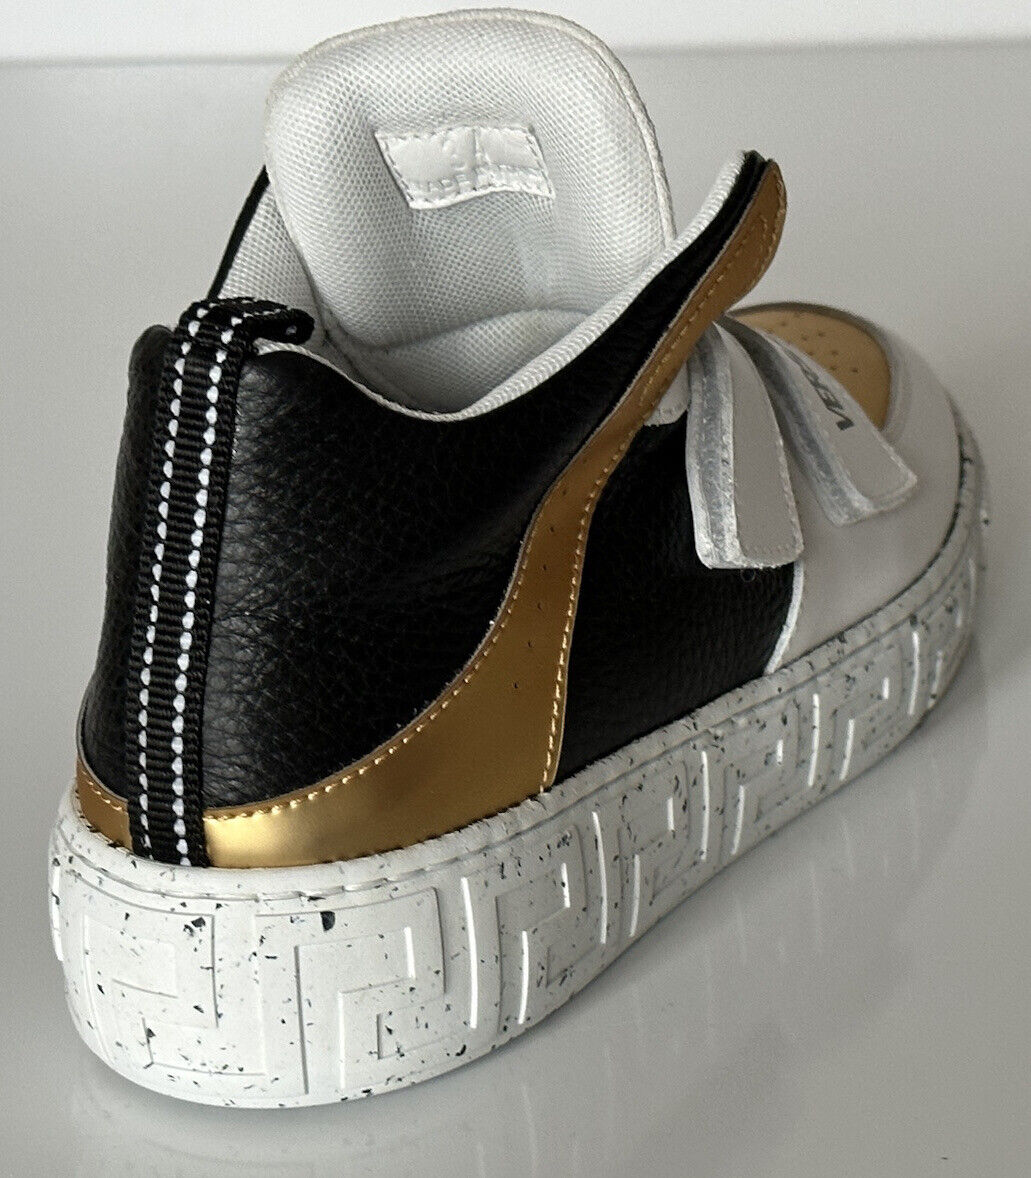 Neu mit Etikett: 575 $ Versace La Greca High-Top-Sneaker für Jungen 34 Euro (9,7 Zoll Länge) Italien 